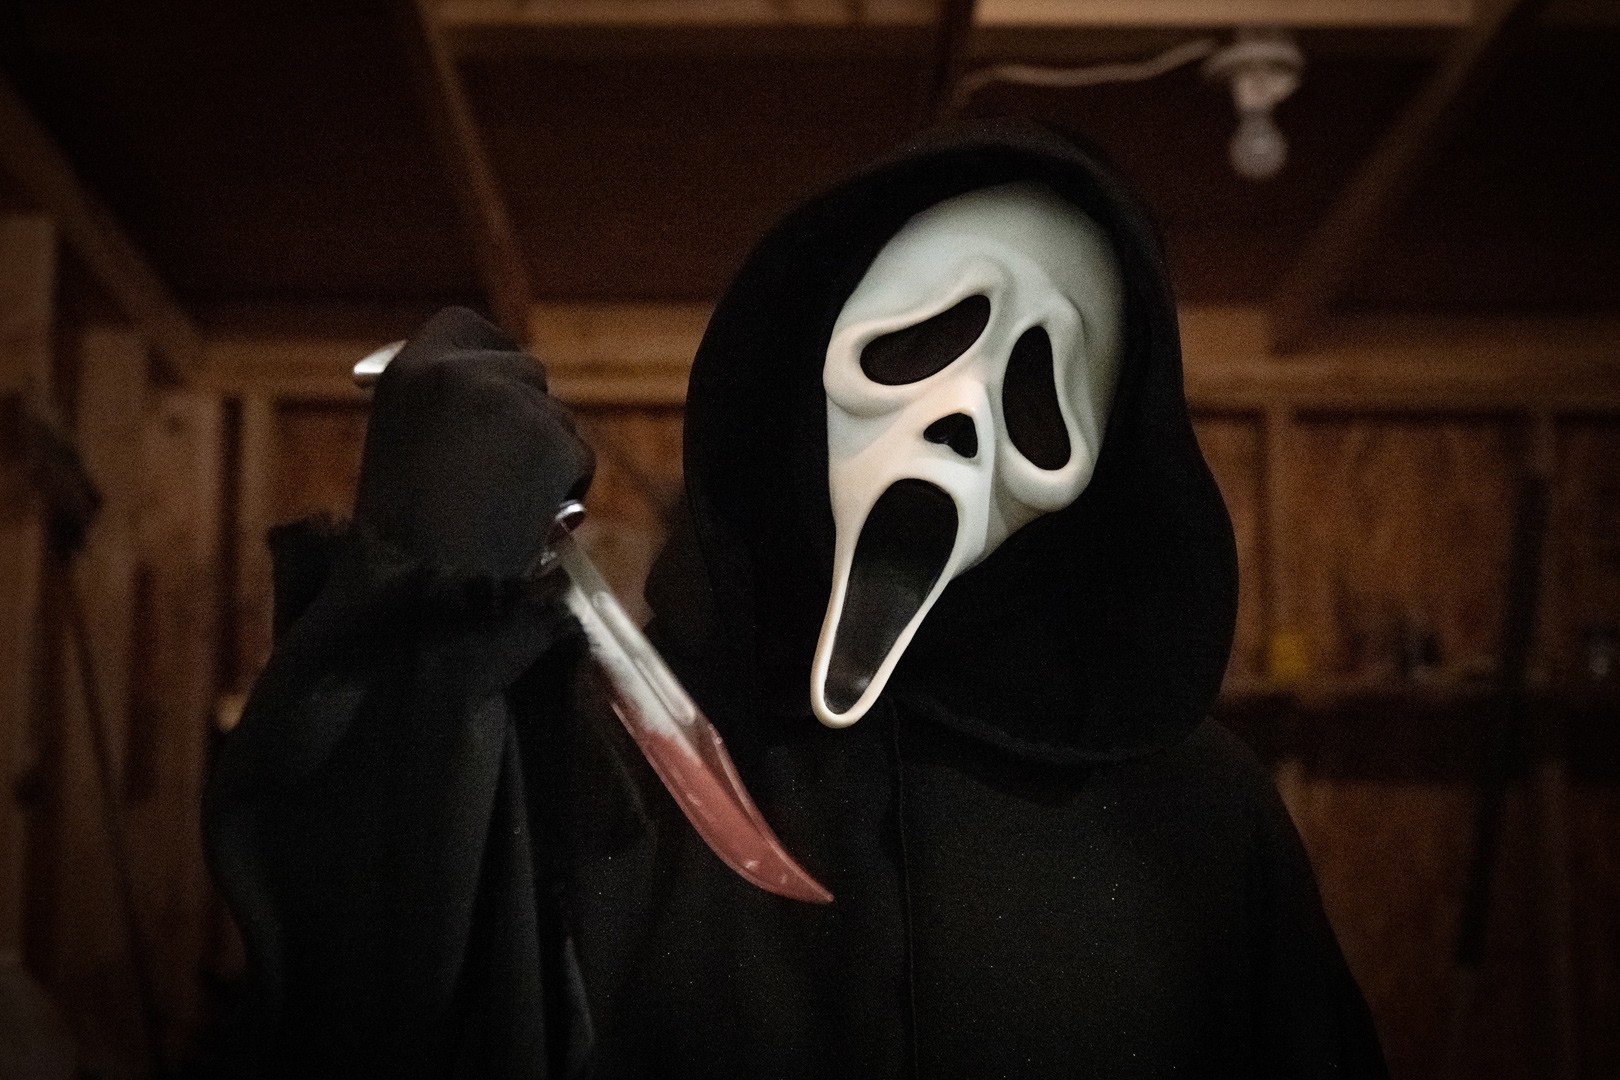 Scary Movie Scream Face Mask – Next Deal Shop EU